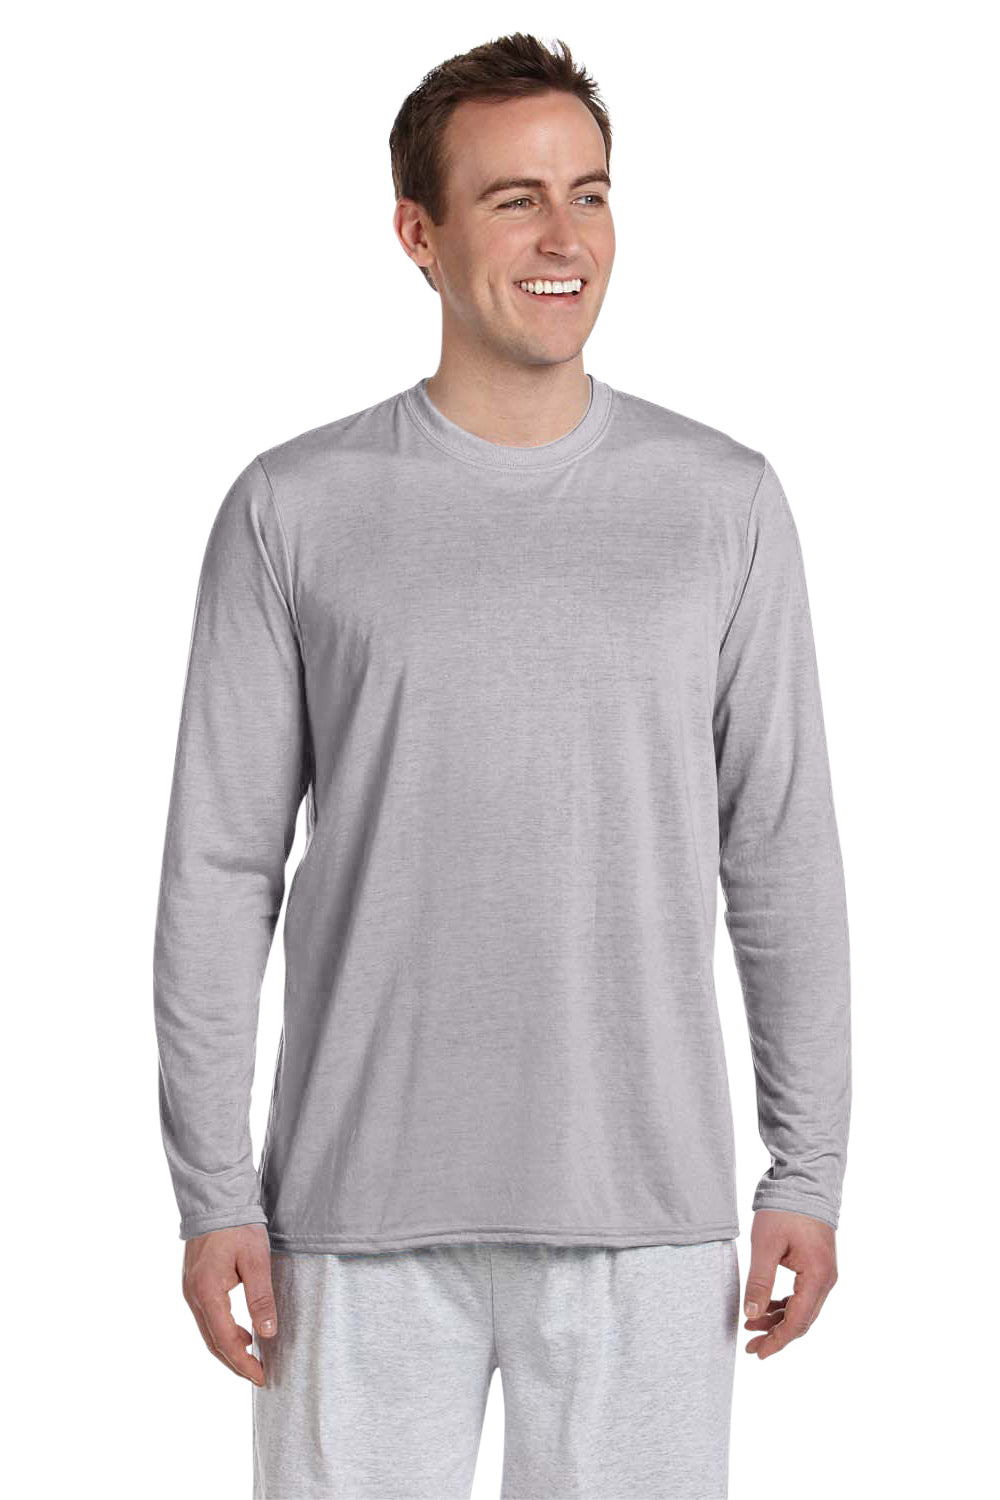 Gildan G424 Mens Performance Jersey Moisture Wicking Long Sleeve Crewneck T-Shirt Sport Grey Front